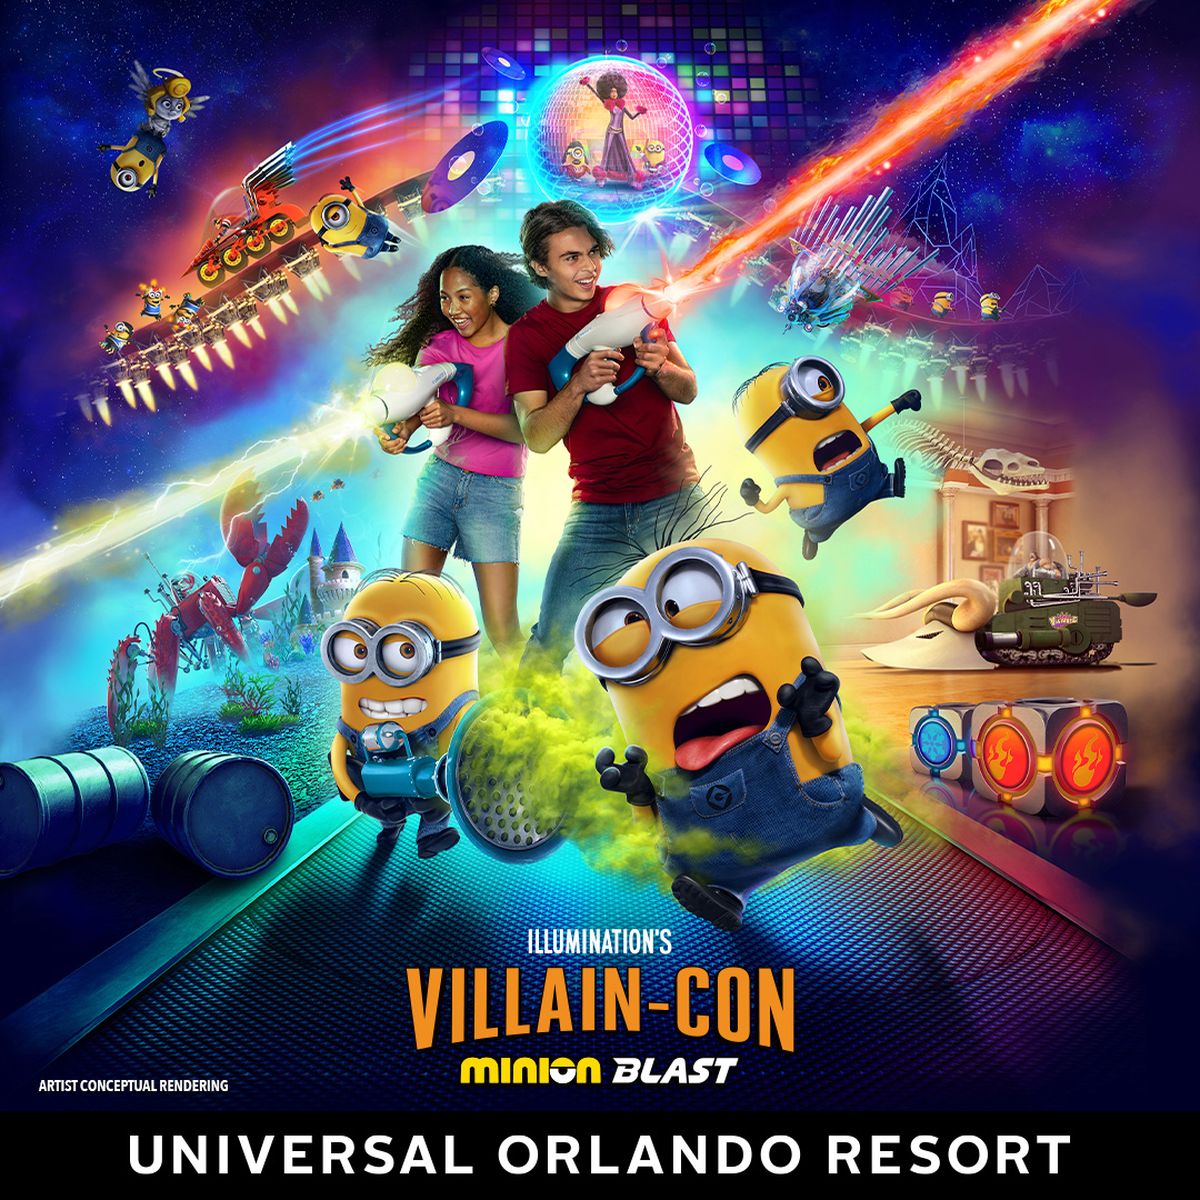 Illumination’s Villain-Con Minion Blast, la nueva atracción en Universal Studios Florida, pone a prueba sus habilidades de villano en una experiencia de juego interactiva.